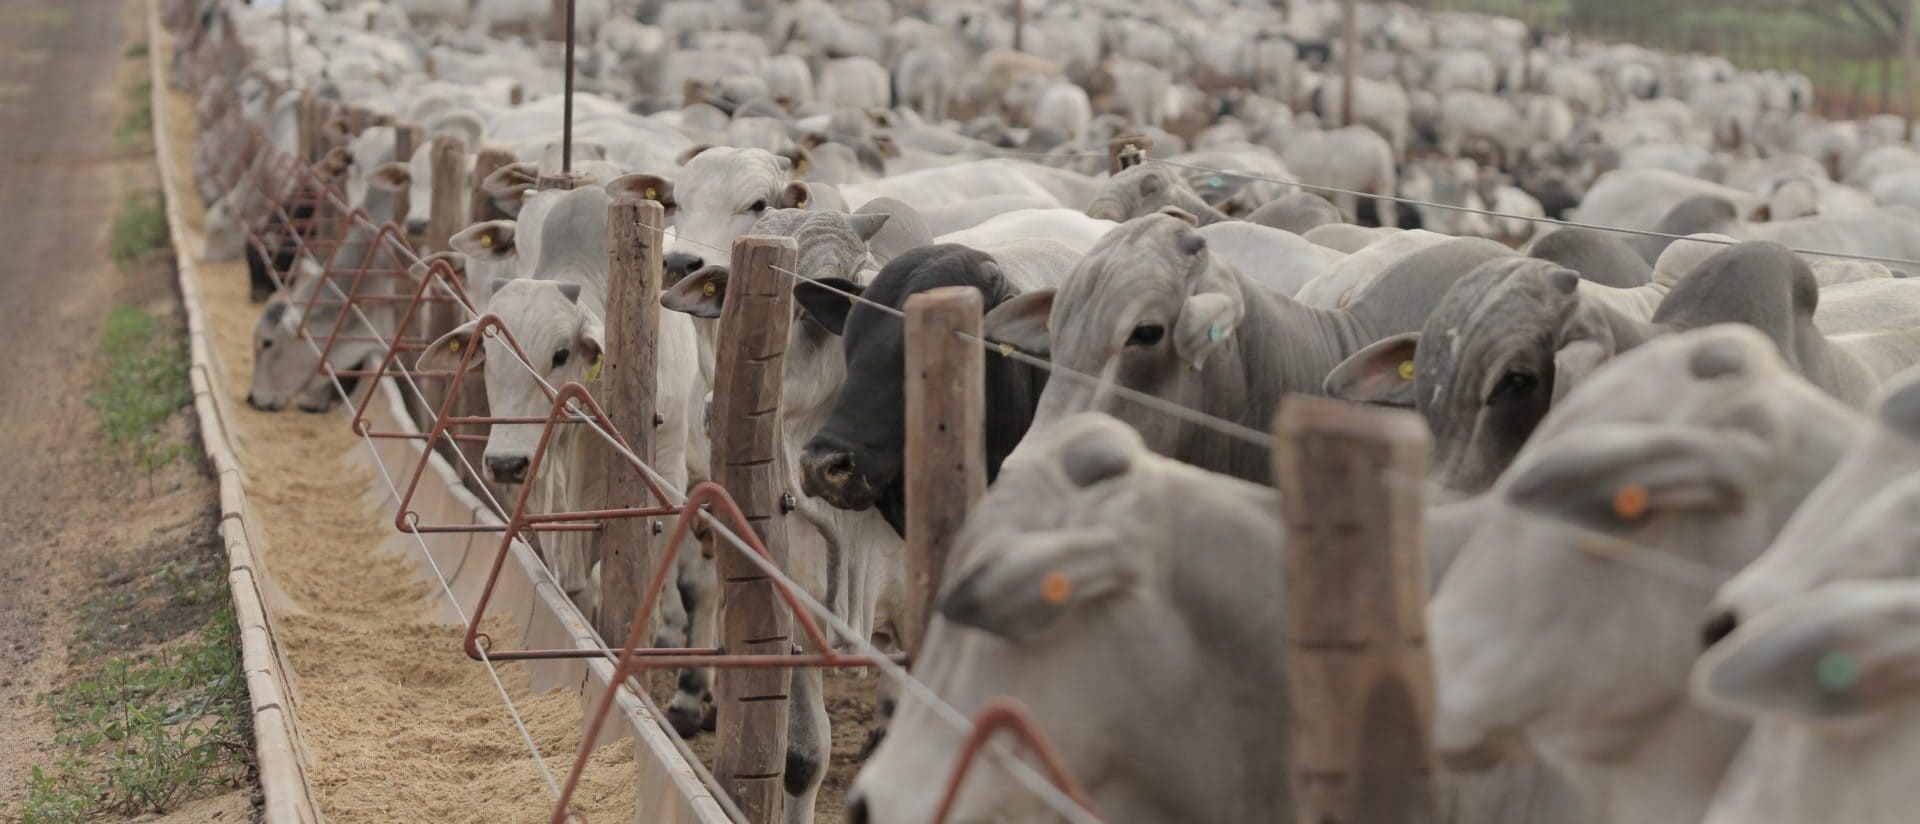 Pneumonia em bovinos confinados: veja os principais pontos sobre a doença